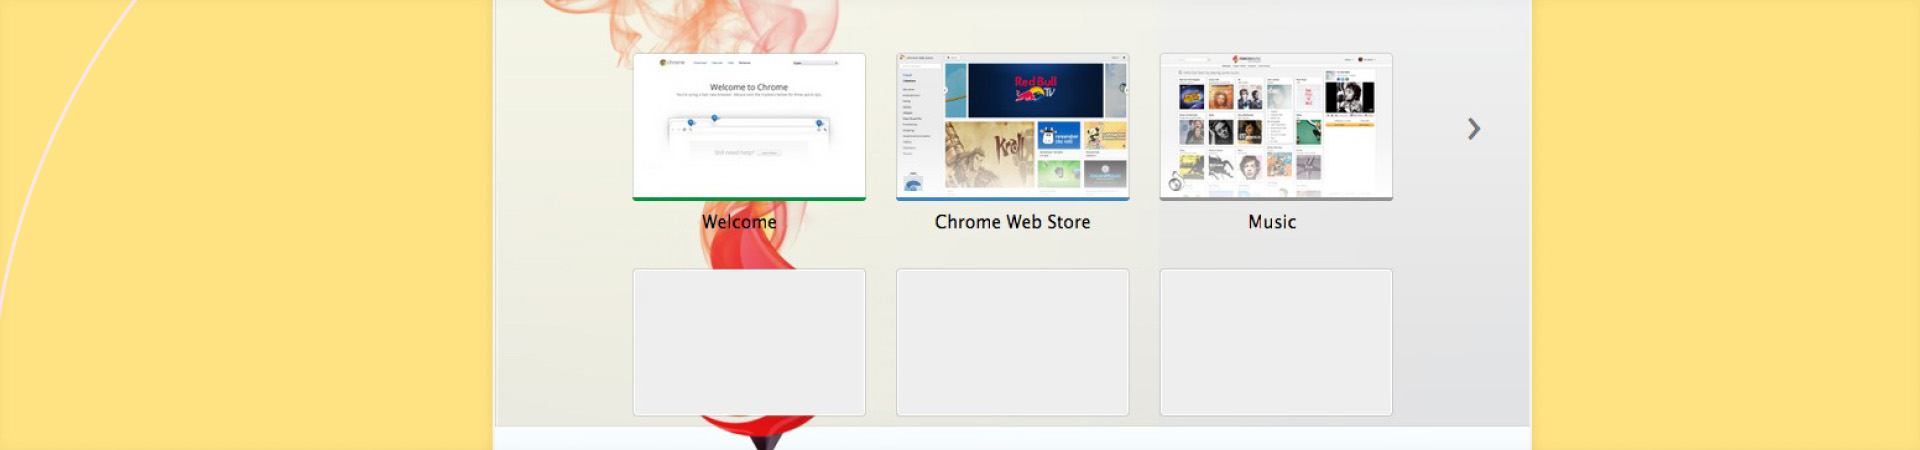 Erstellung einer alternativen Browser-Anwendung für Mac